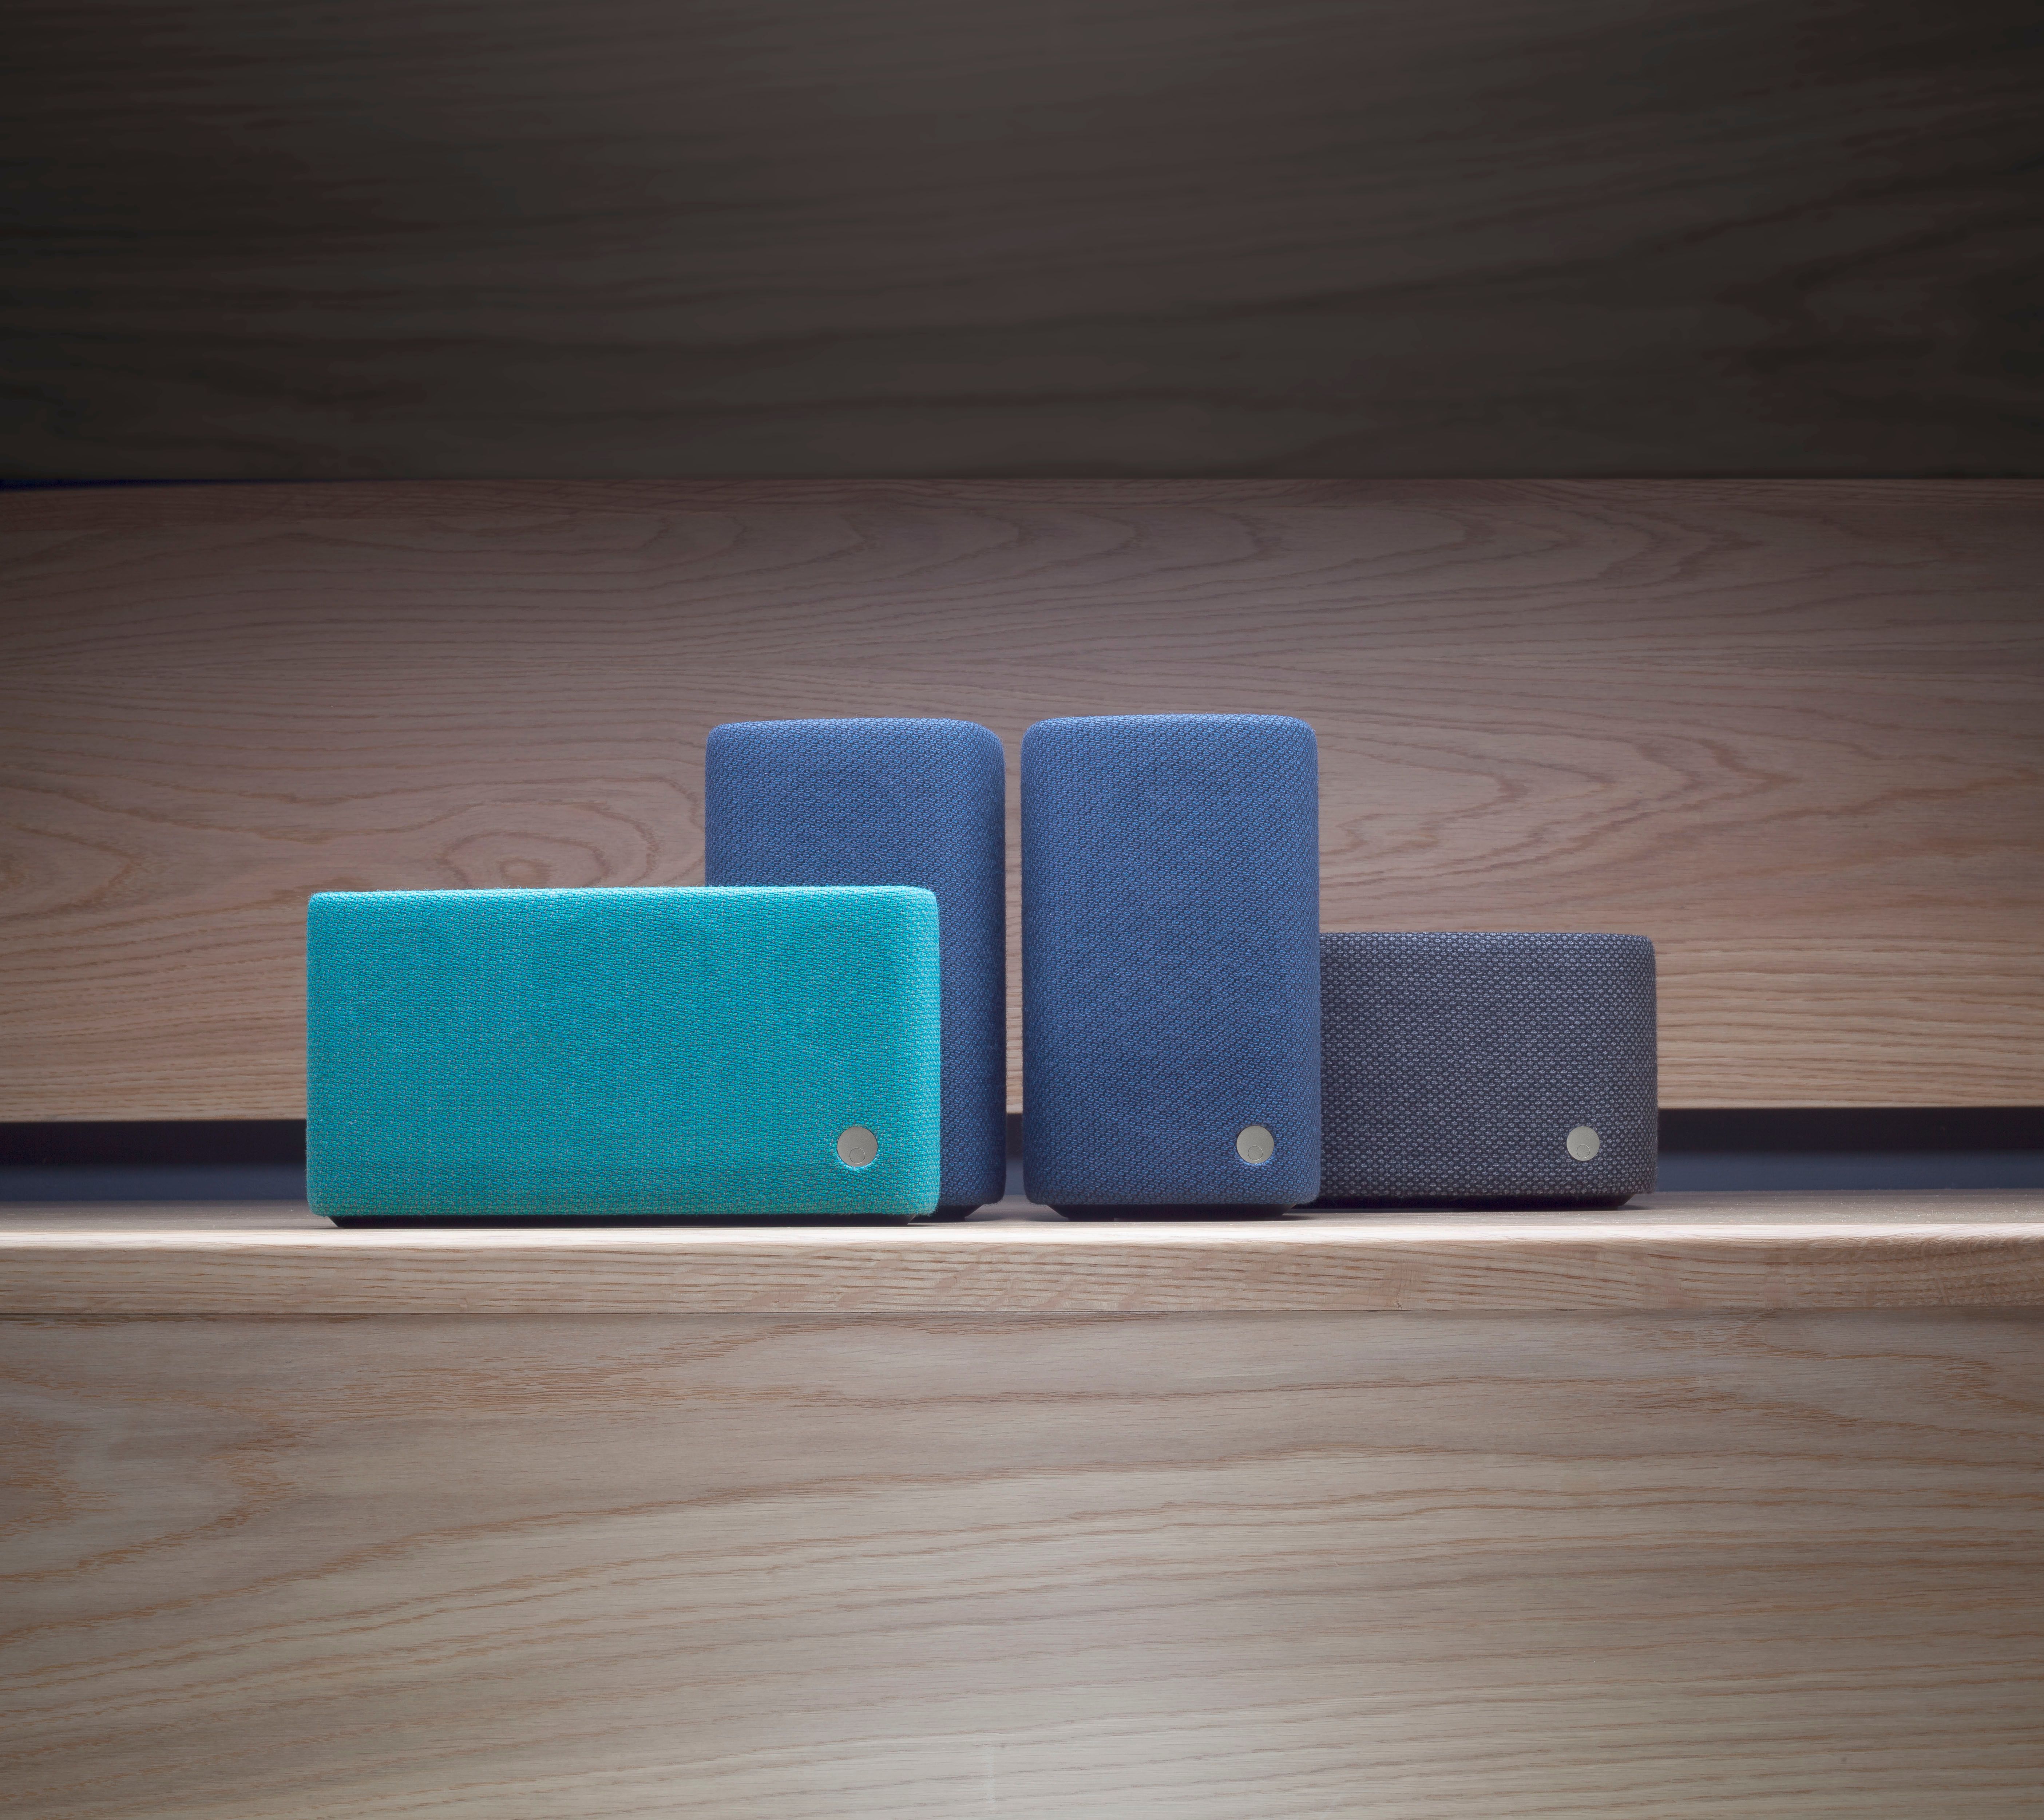 cambridge audio reveals yoyo range of bluetooth speakers image 1